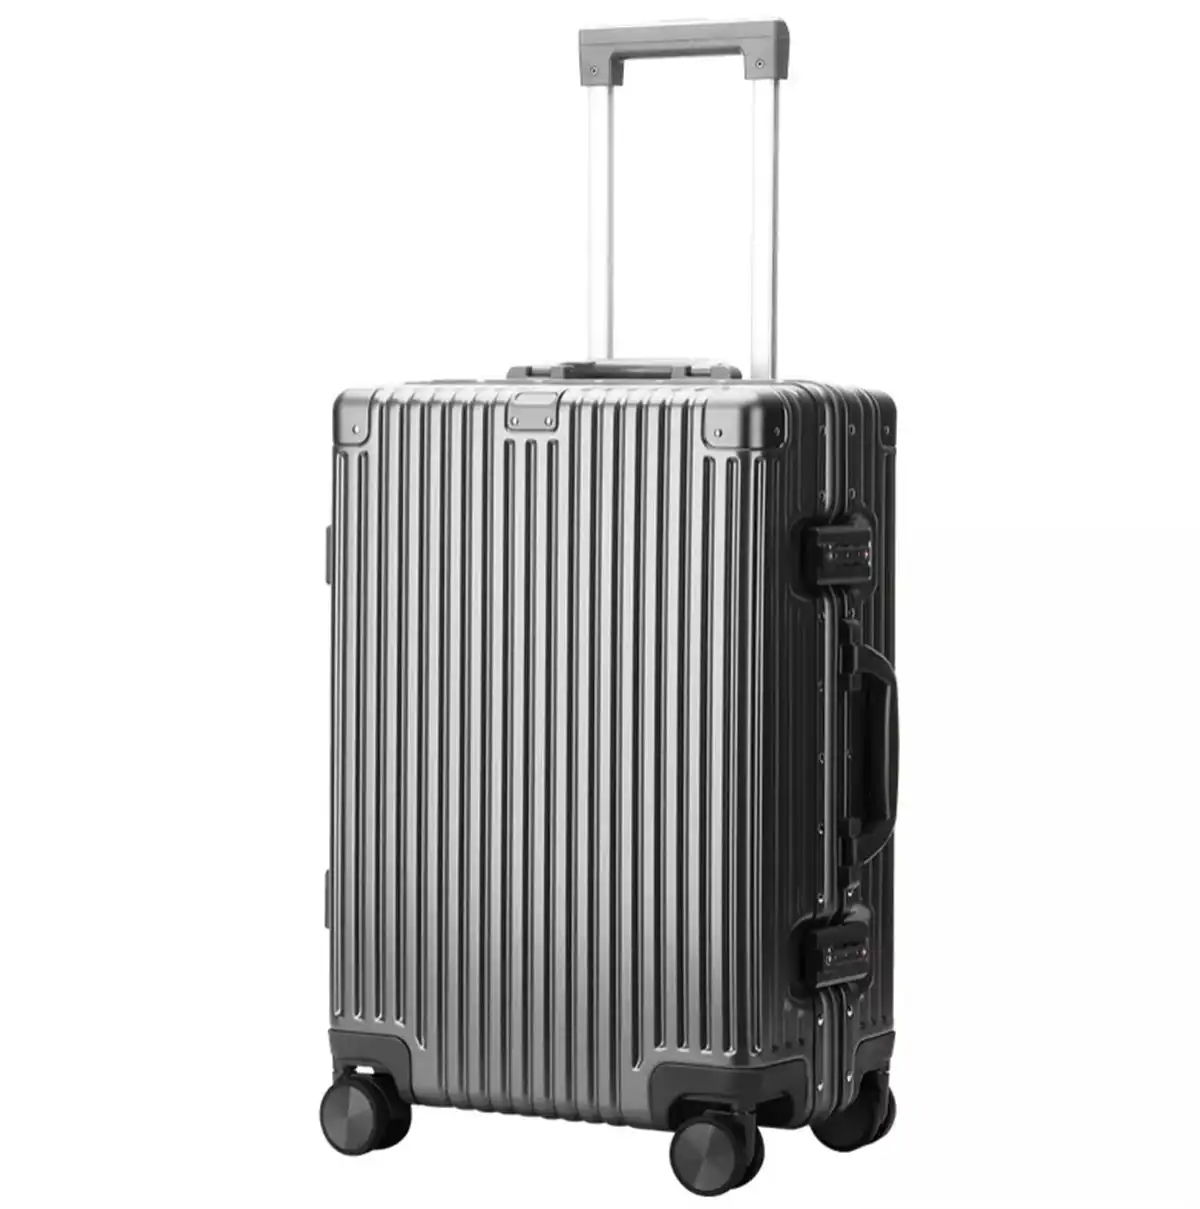 Bopai Aluminium Luggage Suitcase Light weight Carry on HardCase B3208 Grey